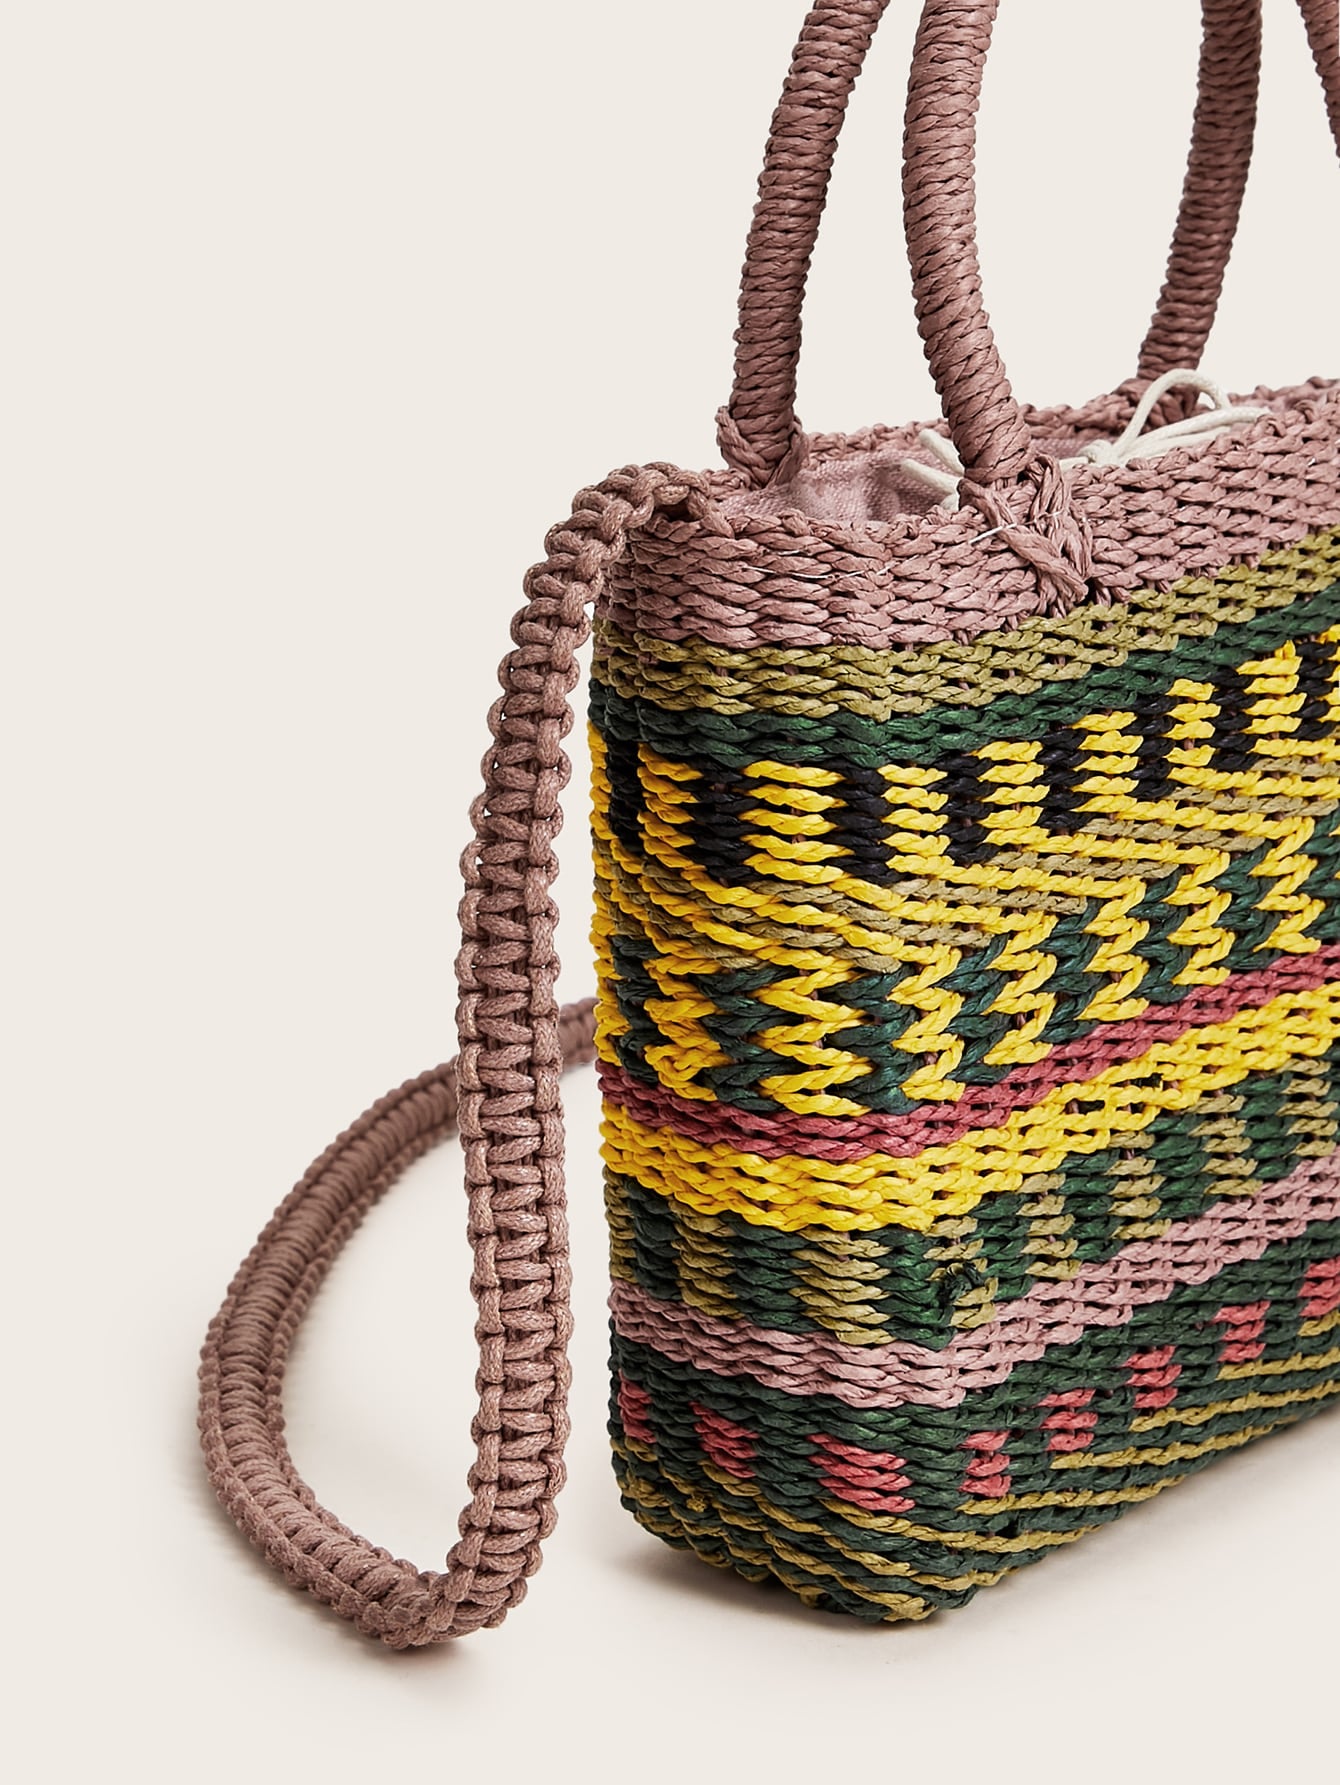 Color-block Woven Raffia Satchel Bag